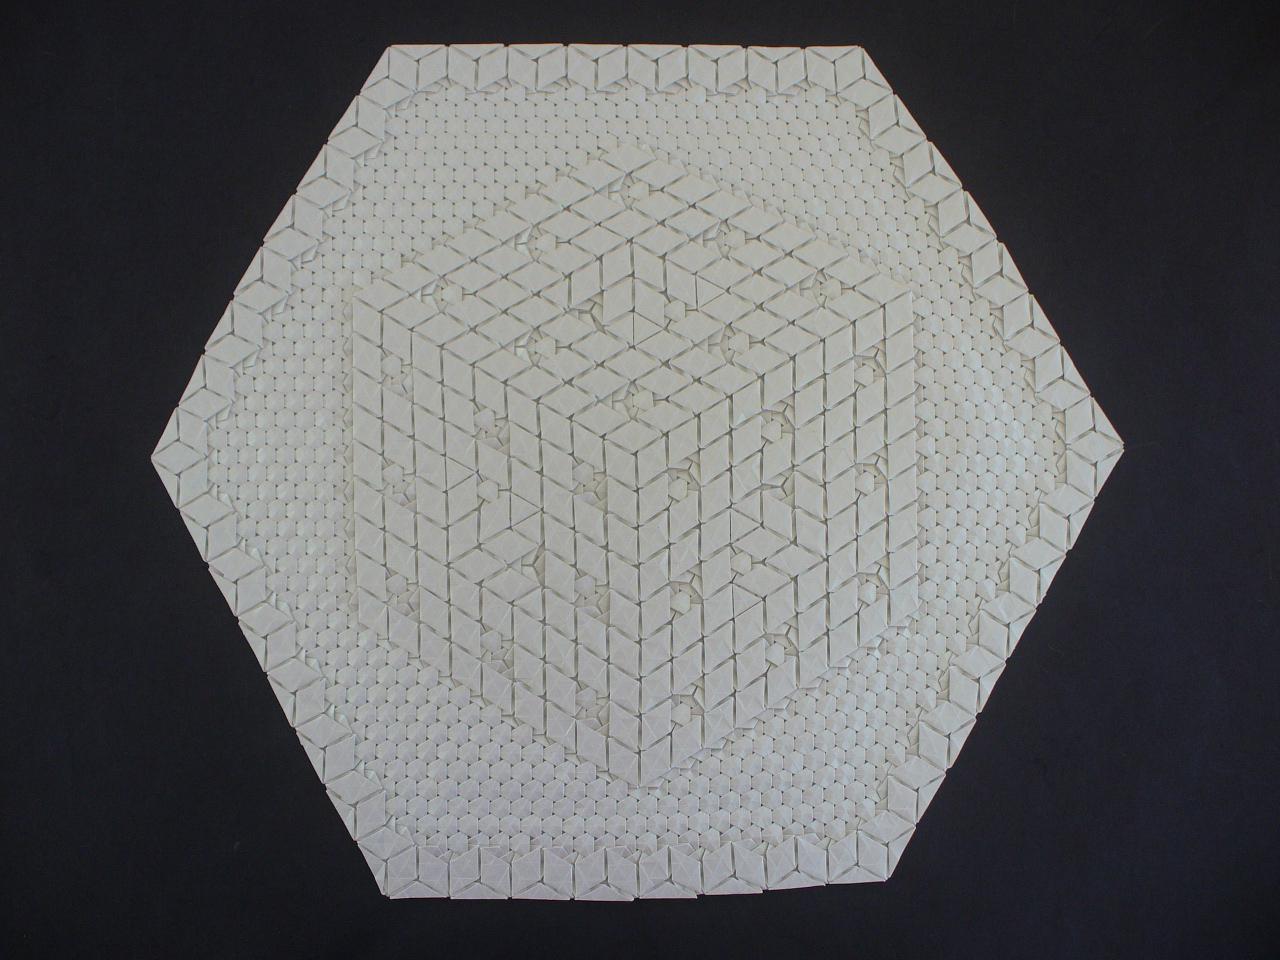 Image for entry 'Menger Sponge Tessellation, level 2'